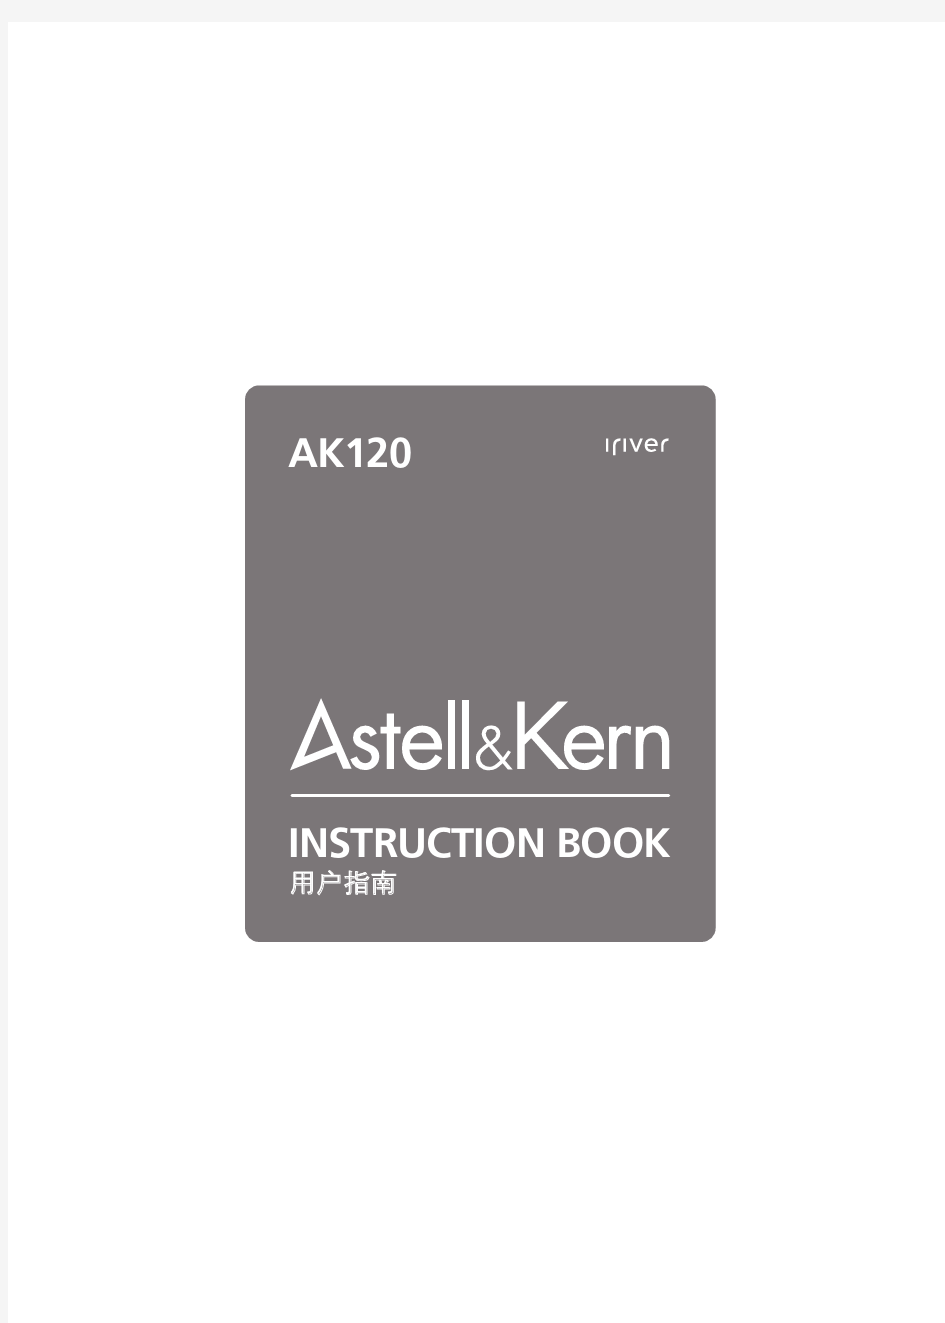 AK120简体中文说明书